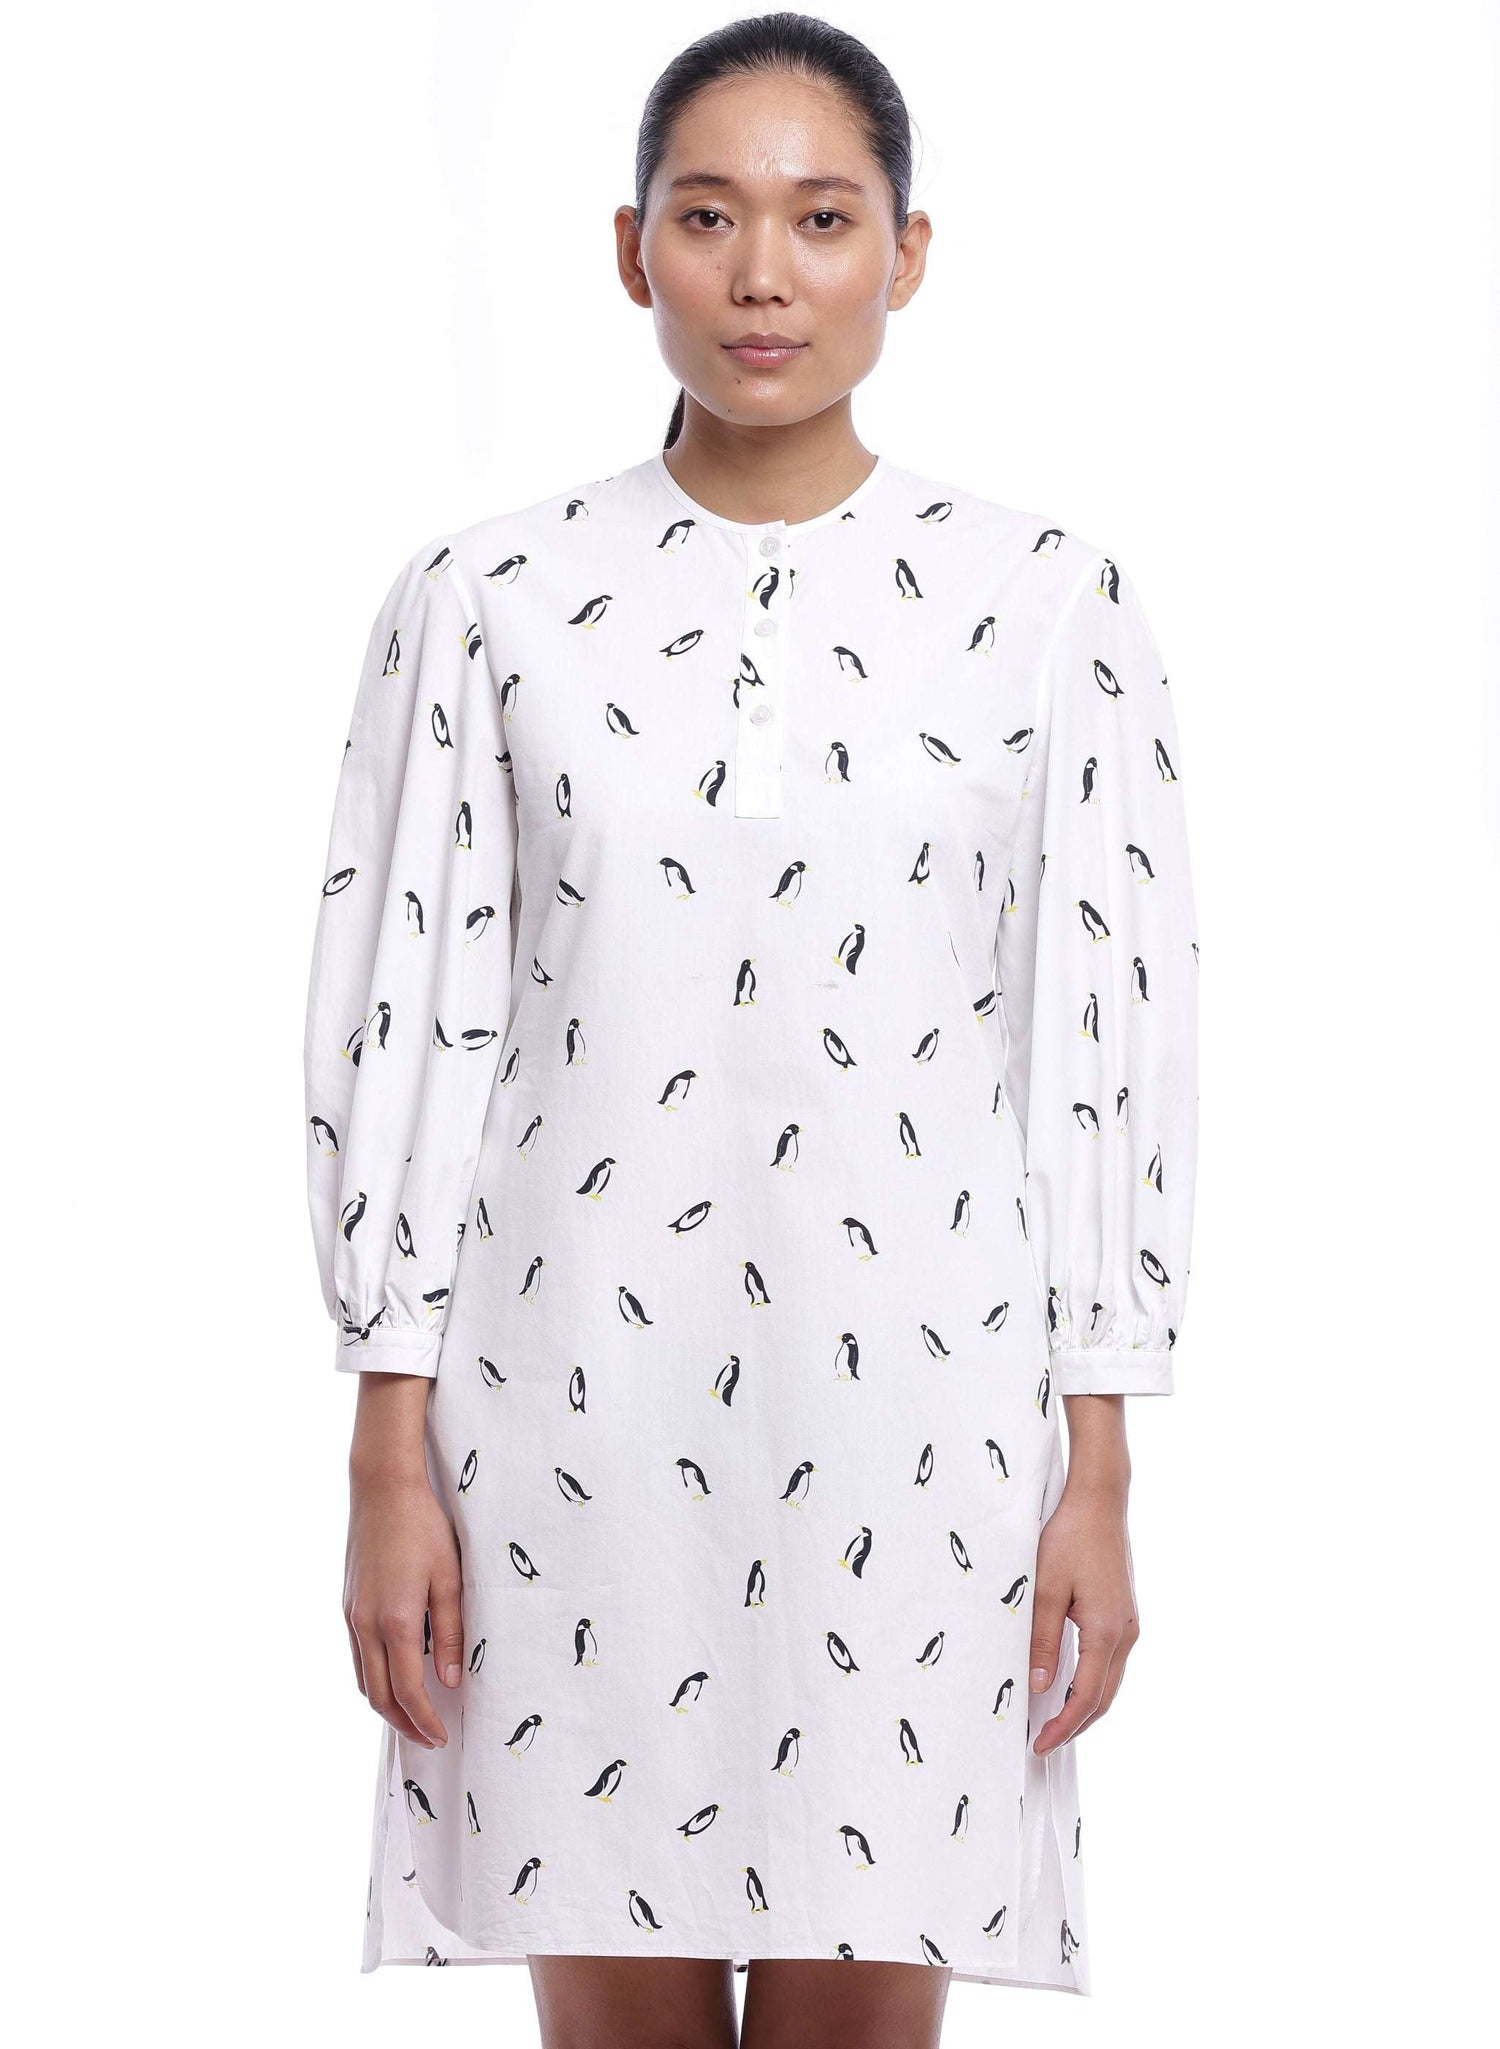 Penguin Print Dress - Genes online store 2020